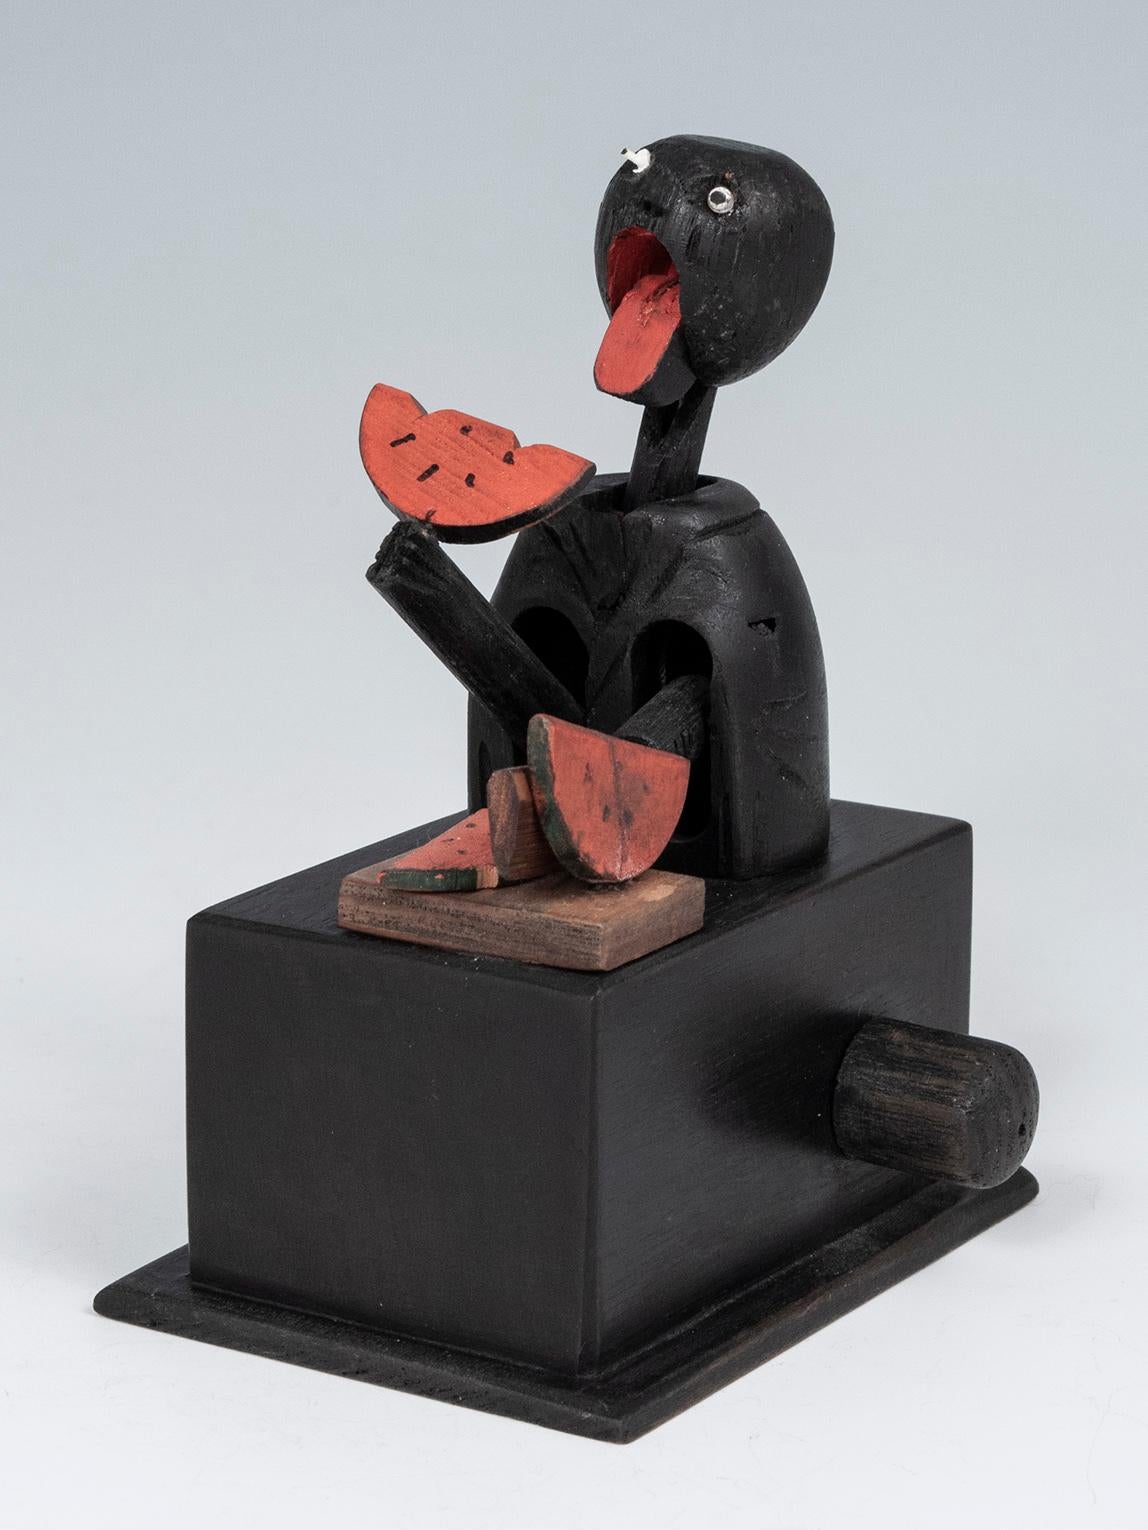 Jouet mécanique du début du 20e siècle de KOBE, Japon

Ce petit jouet mécanique a été fabriqué à KOBE, au Japon. Il s'agit de la poupée classique d'un homme coupant et mangeant une tranche de pastèque, l'action étant contrôlée par un bouton tournant